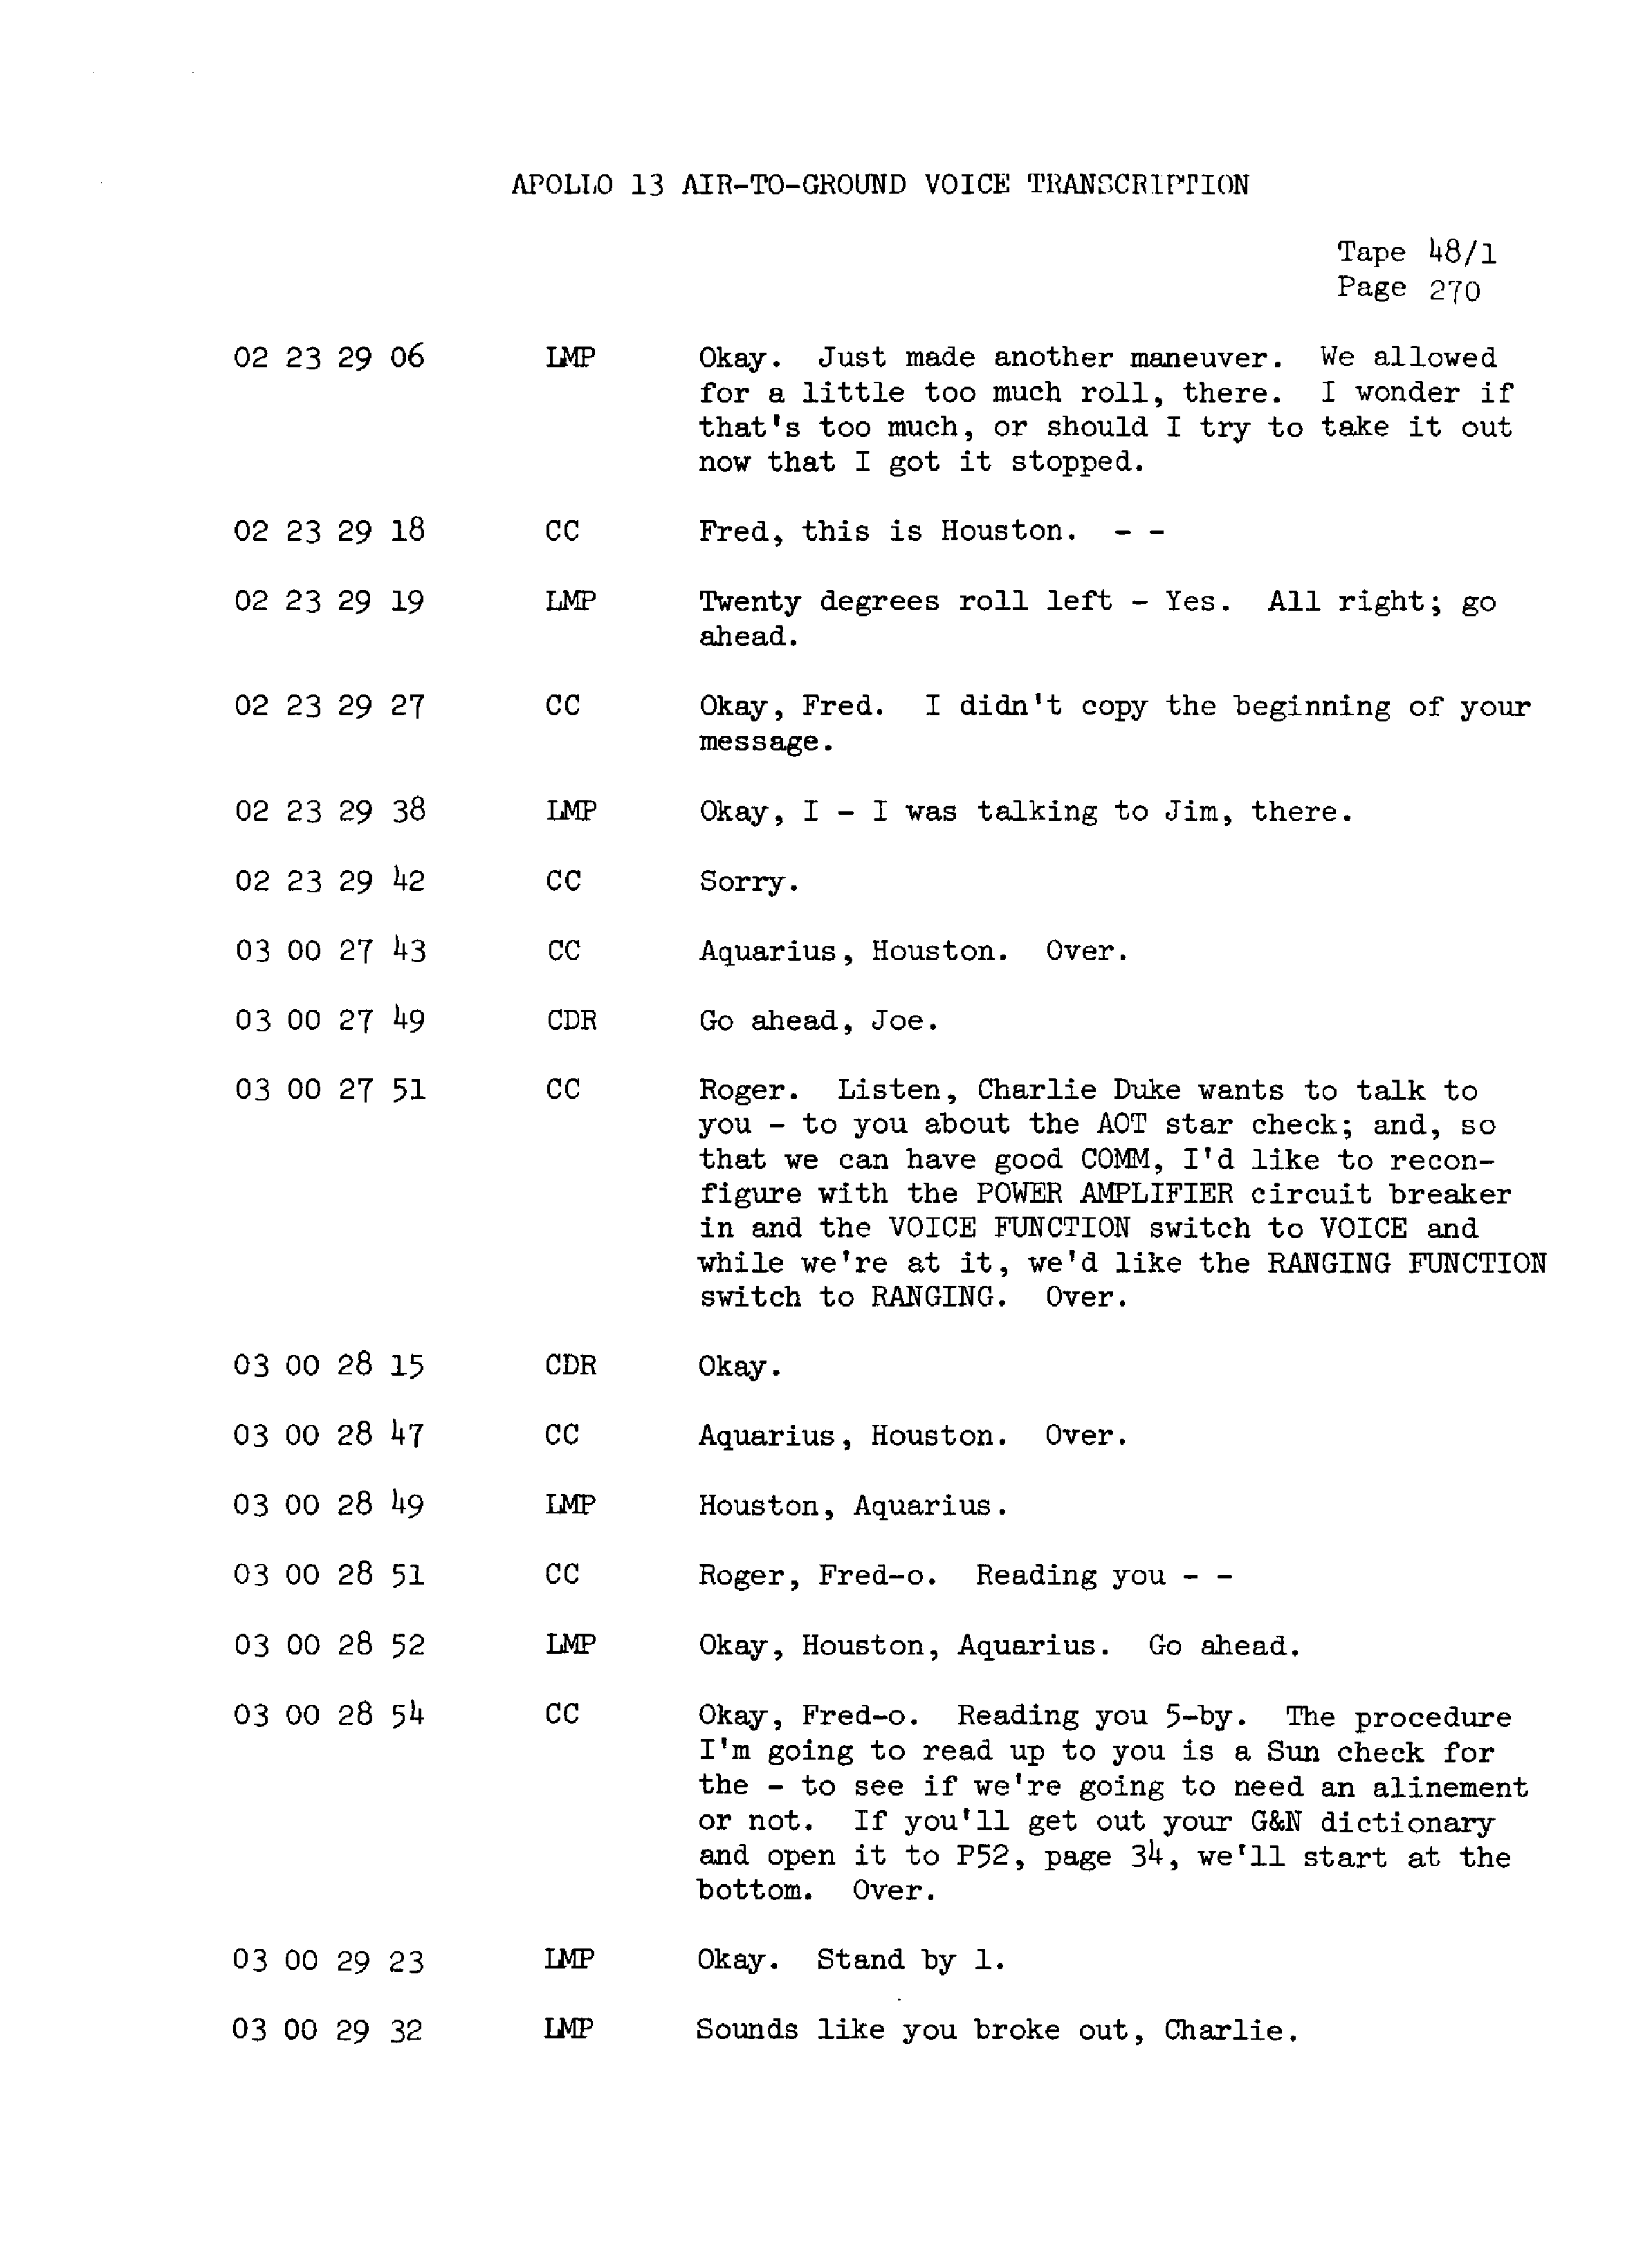 Page 277 of Apollo 13’s original transcript